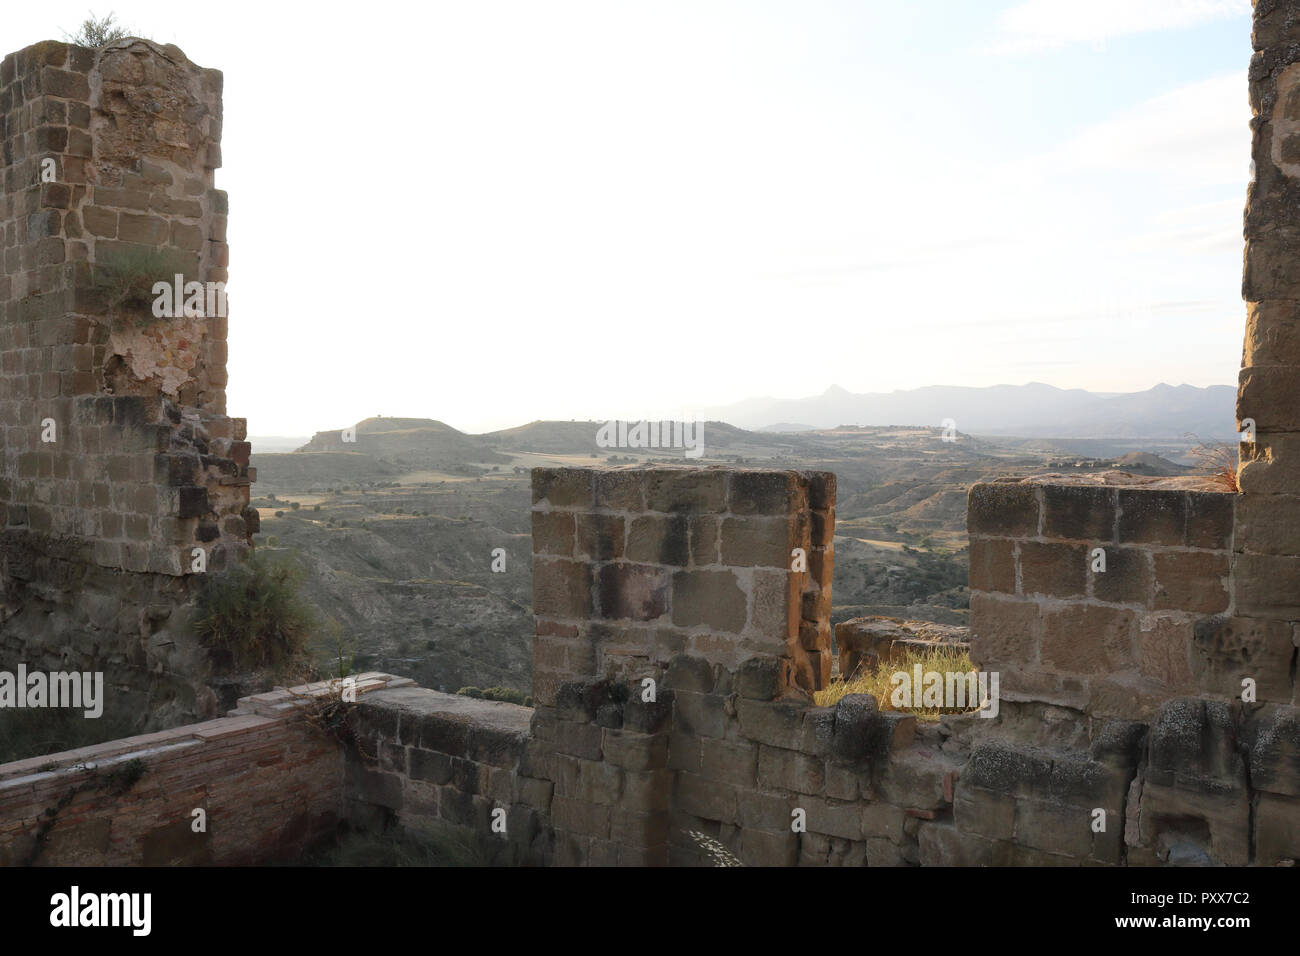 El labrado de los campos de cultivo de la región de Aragón visto desde las ruinas de los muros de defensa de piedra abandonados Montearagon castillo, durante la puesta de sol, en España Foto de stock